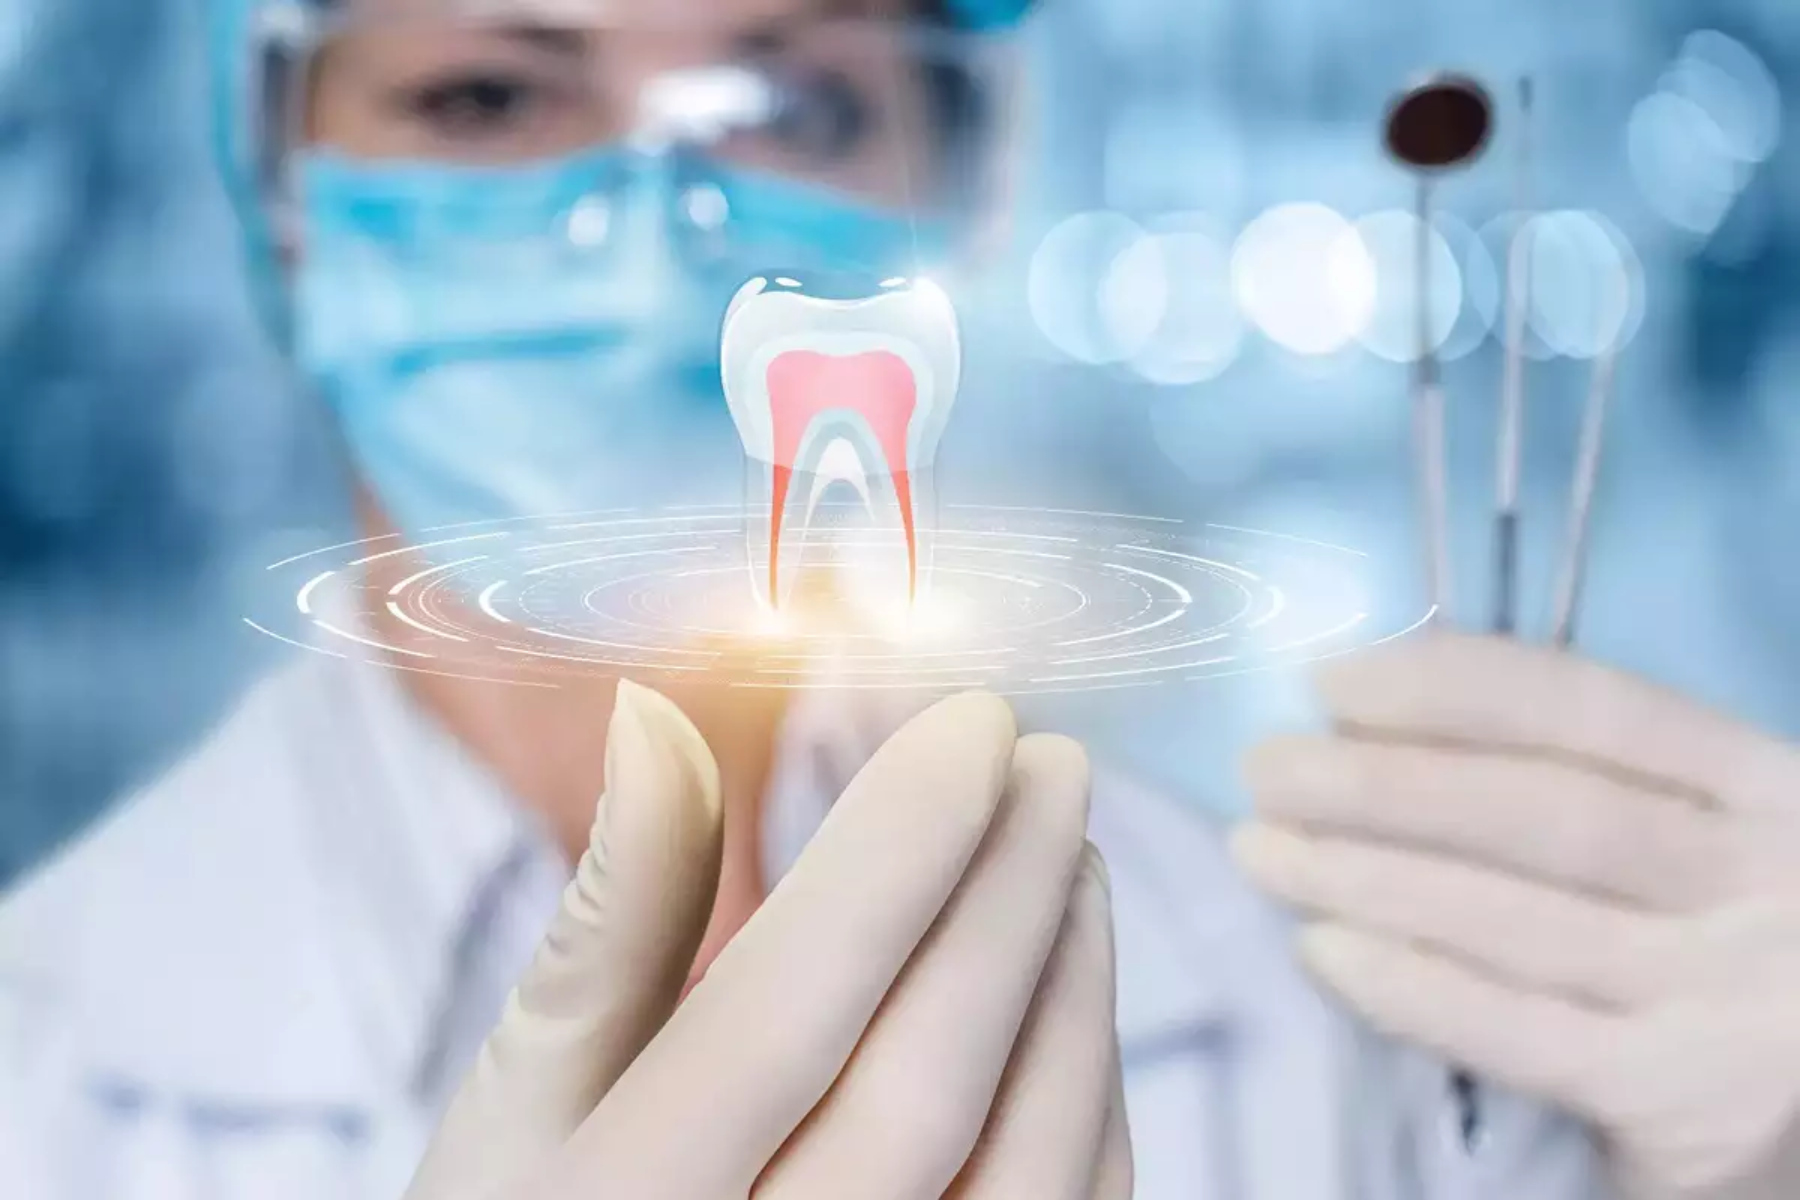 Οδοντικά εμφυτεύματα: Τεχνολογία οδοντικών εμφυτευμάτων που “αλλάζει το παιχνίδι”